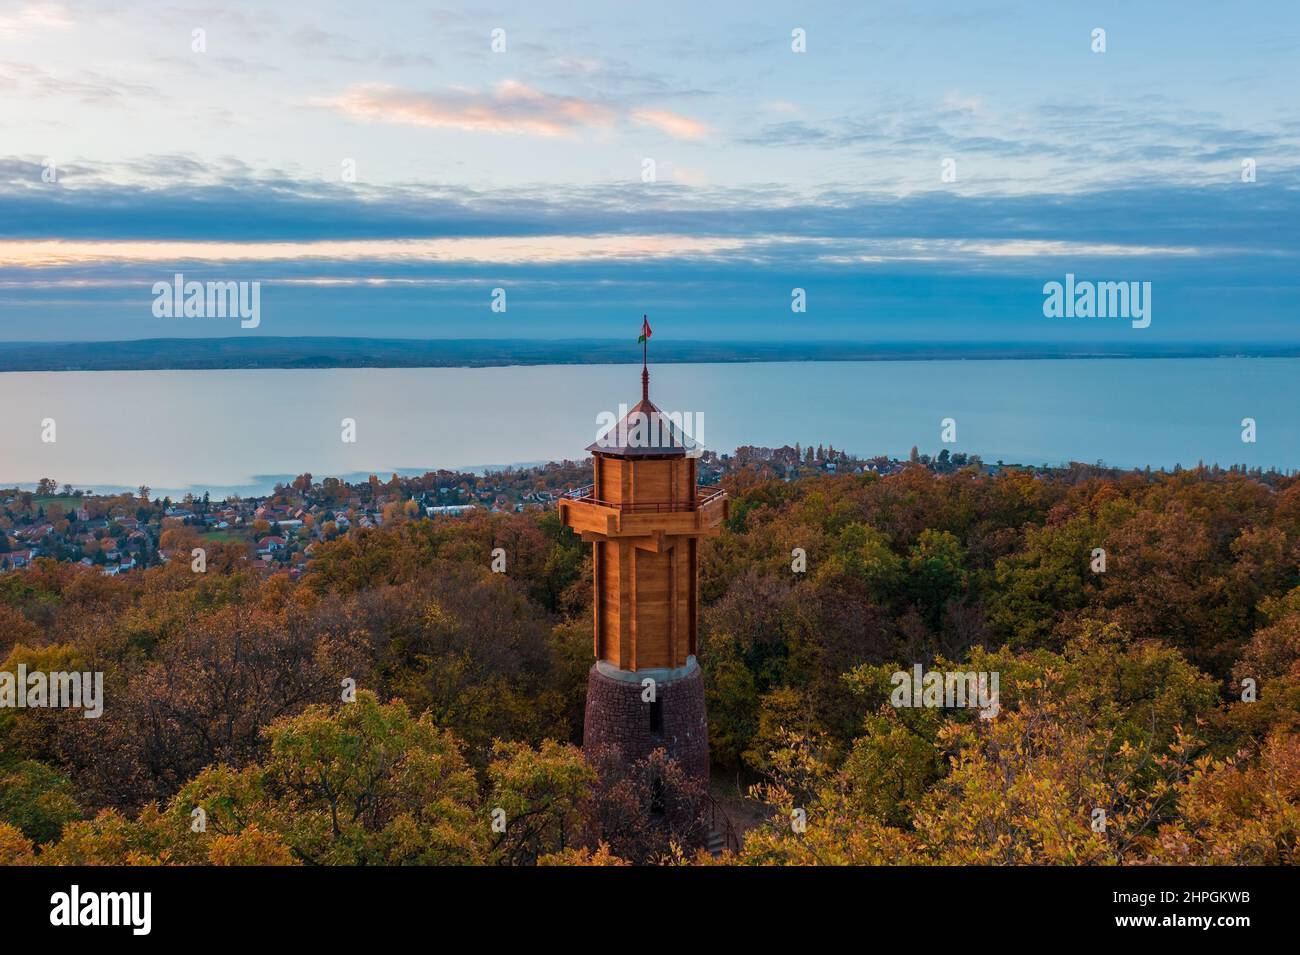 Vue aérienne sur la tour d'observation récemment rénovée de Révfülöp. Lac Balaton et lever de soleil d'automne nuageux à l'arrière-plan. Banque D'Images